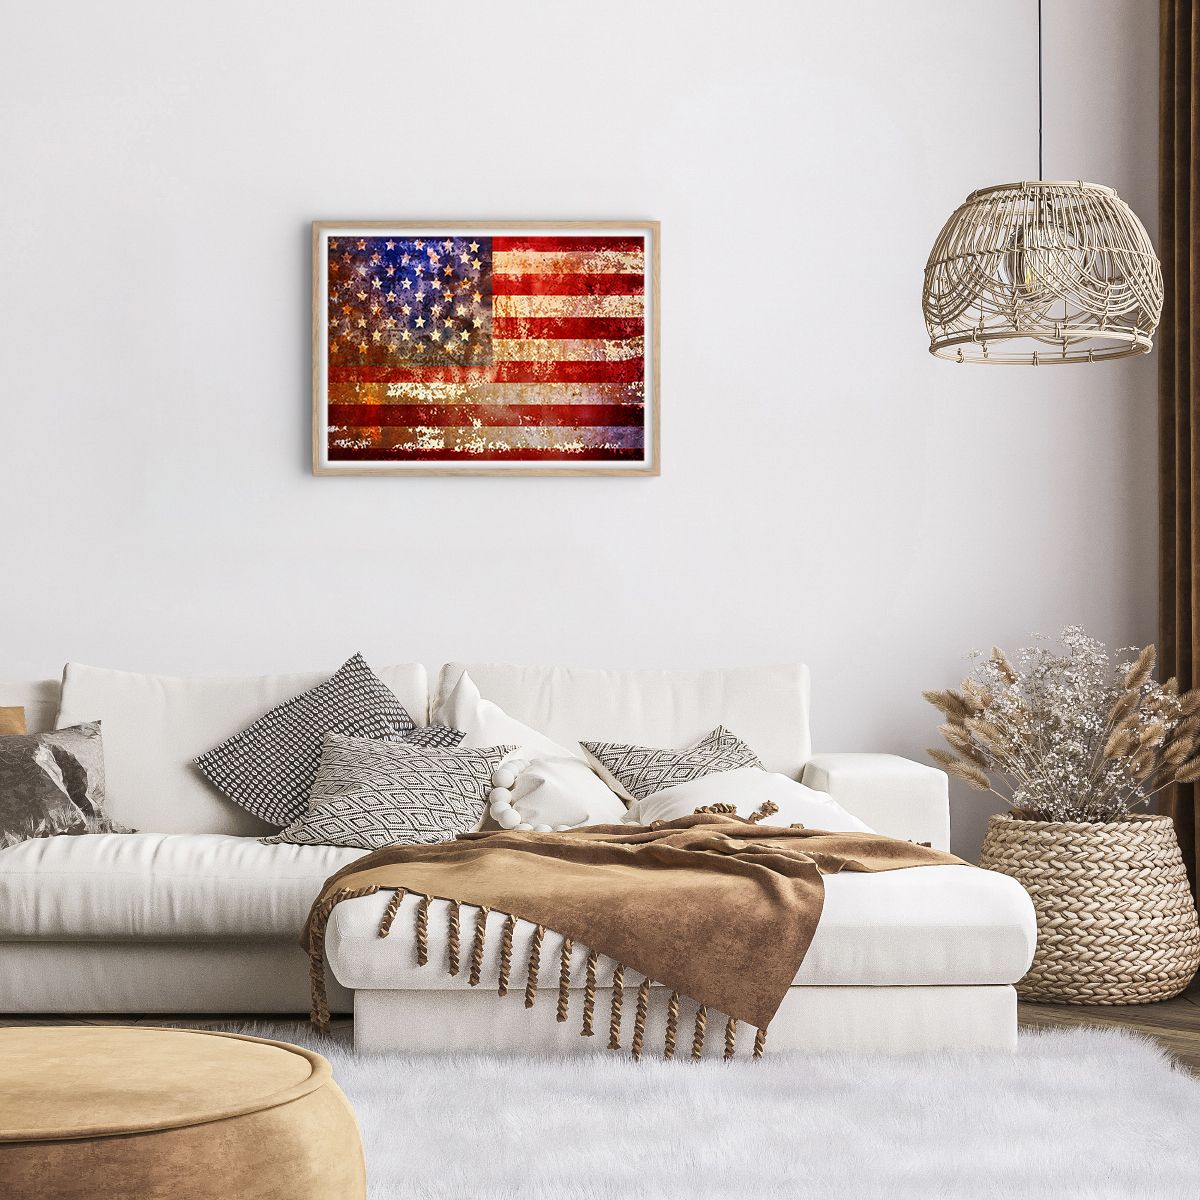 Poster in cornice rovere chiaro Arttor 70x50 cm - L'attimo non passa -  America, Bandiera Americana, Grafica, Arte, Stati Uniti D'America, Per il